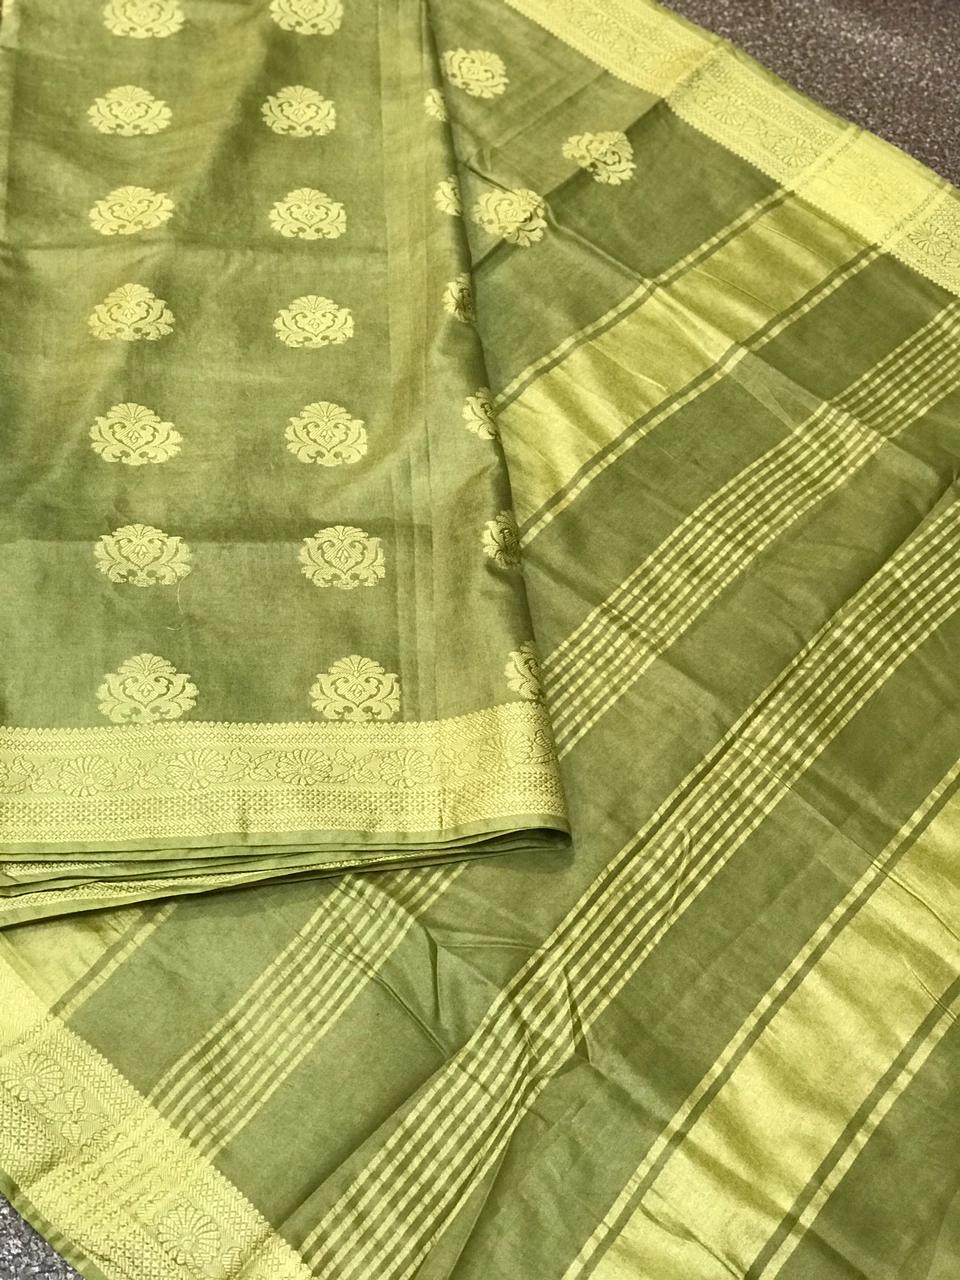 Soft Silk Jaccard Banaras Sarees SILK ZONE